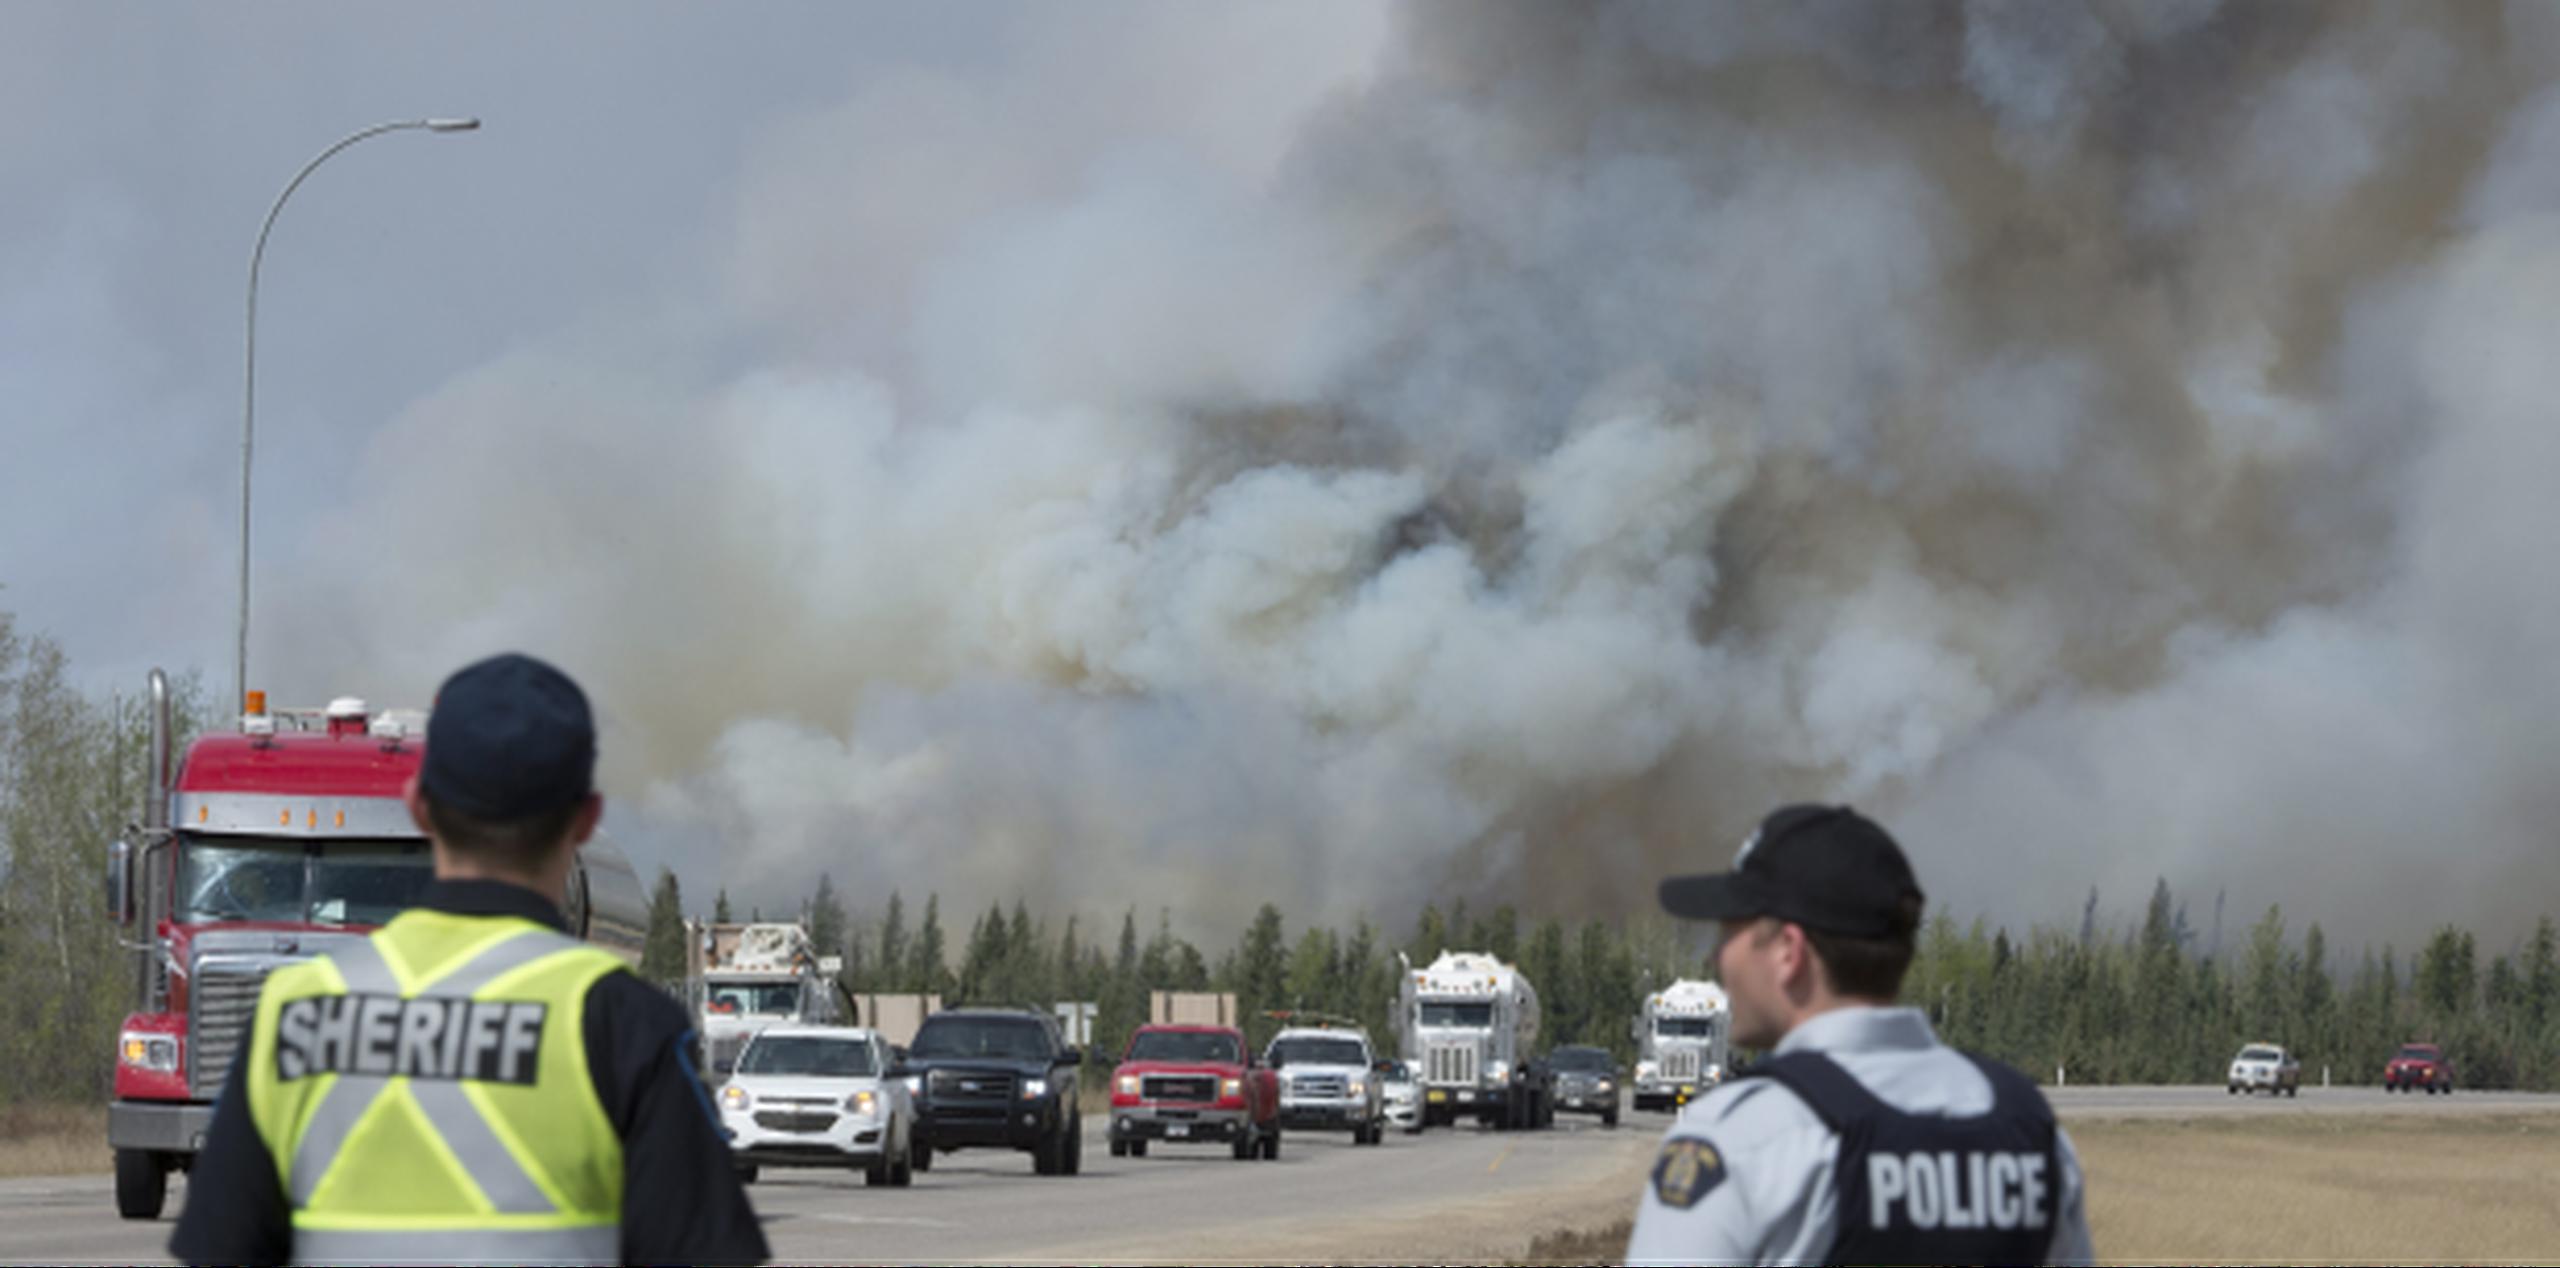 La policía de Canadá vigila uno de los convoyes de camiones y vehículos mientras continúa la evacuación masiva de personas en toda el área afectada por el enorme incendio forestal que ya amenaza con extenderse a otra provincia. (Jonathan Hayward /The Canadian Press via AP)